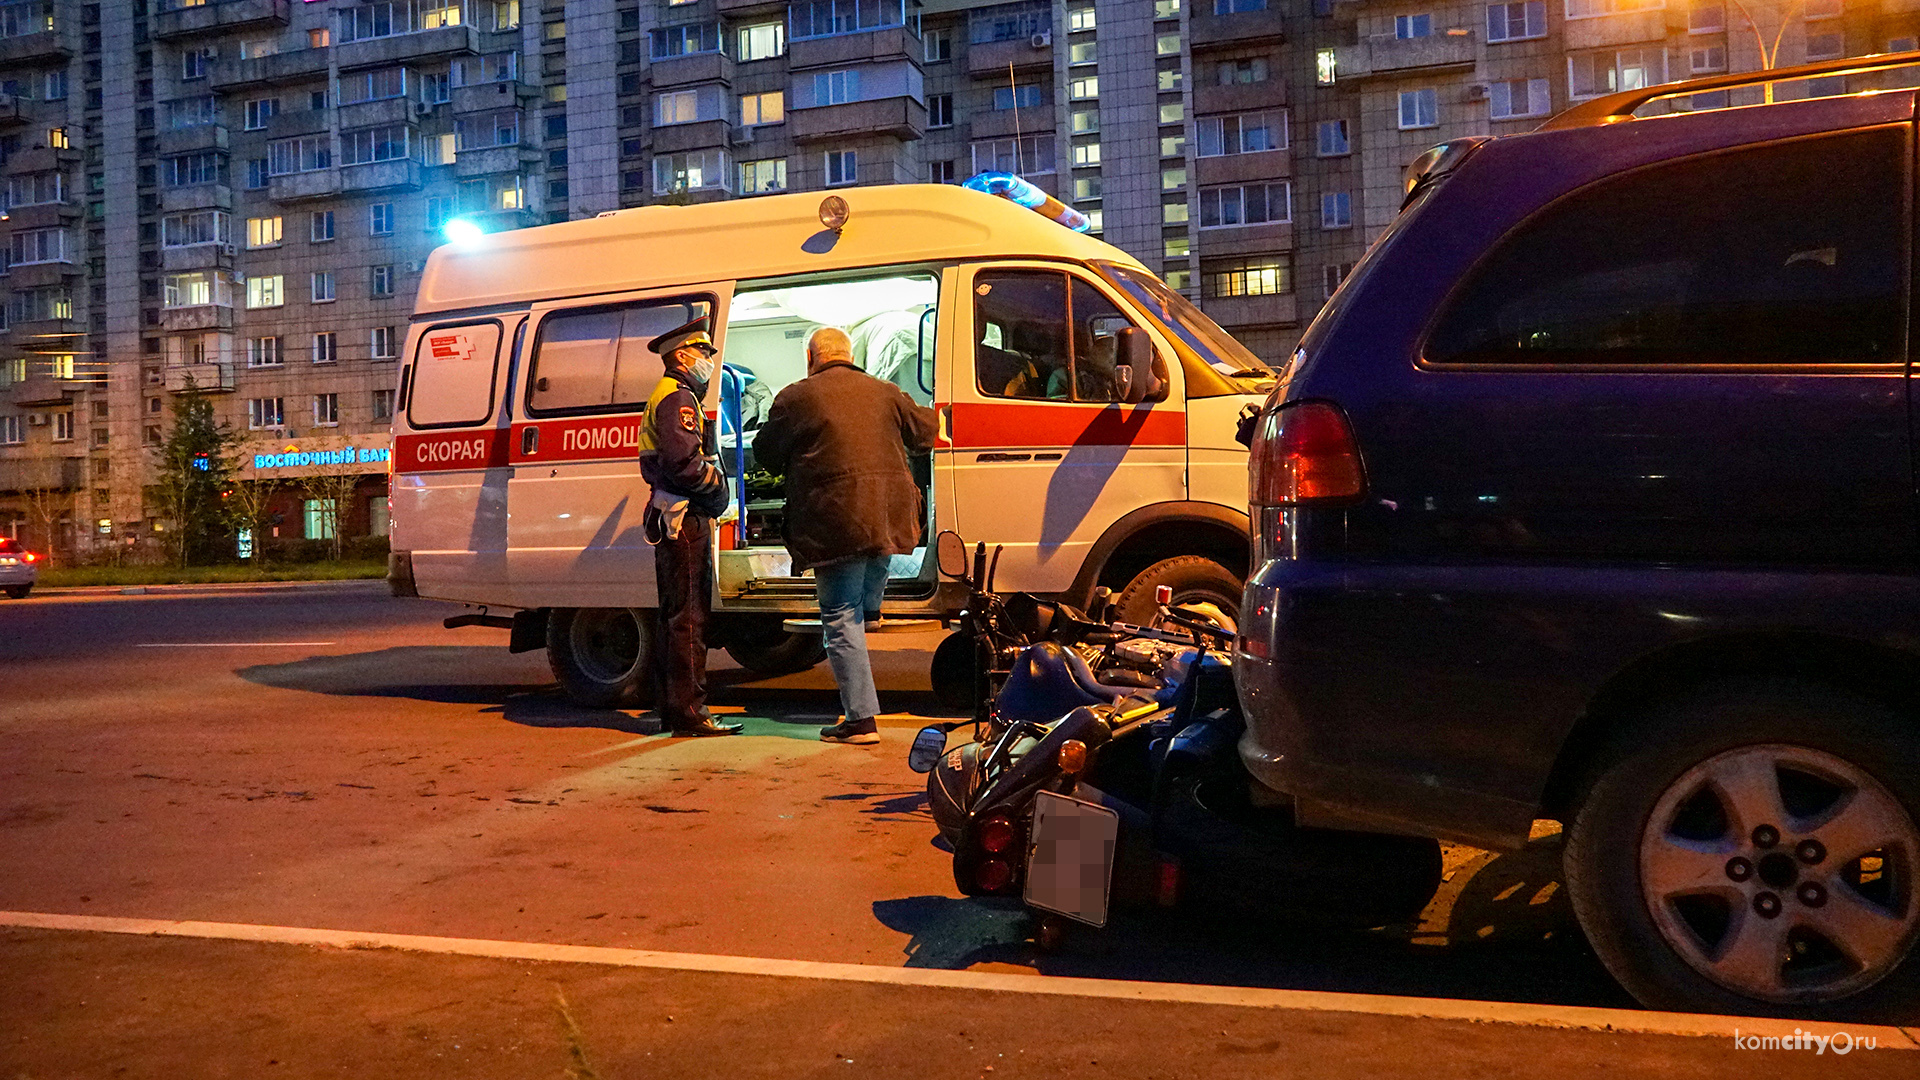 Мотобоулинг в Комсомольске-на-Амуре: в ДТП получили травмы два мотоциклиста